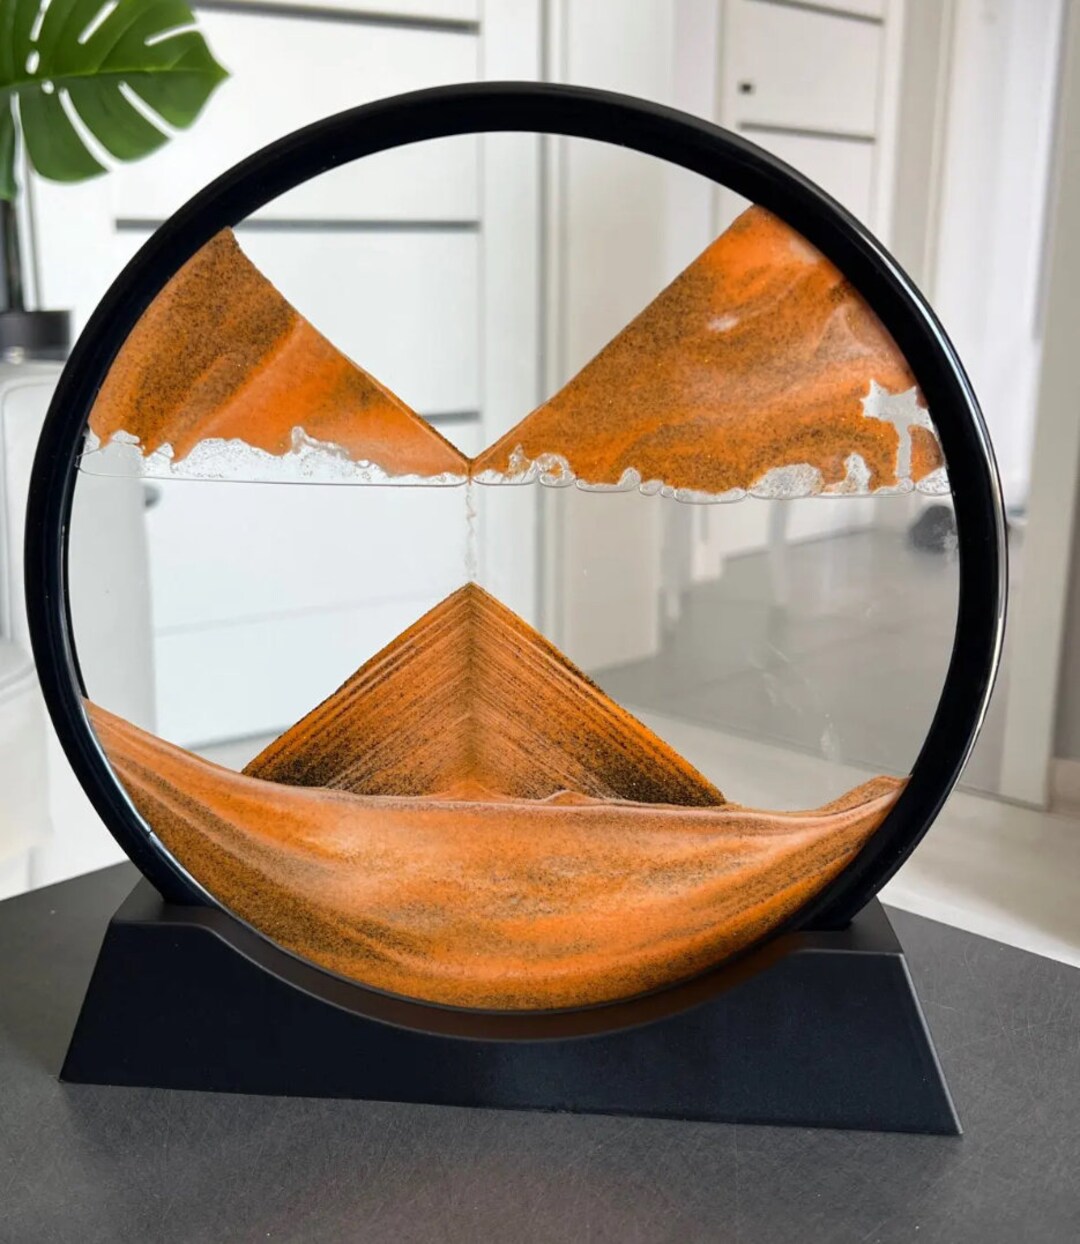 Acheter Image d'art de sable en mouvement, verre rond, sablier 3D